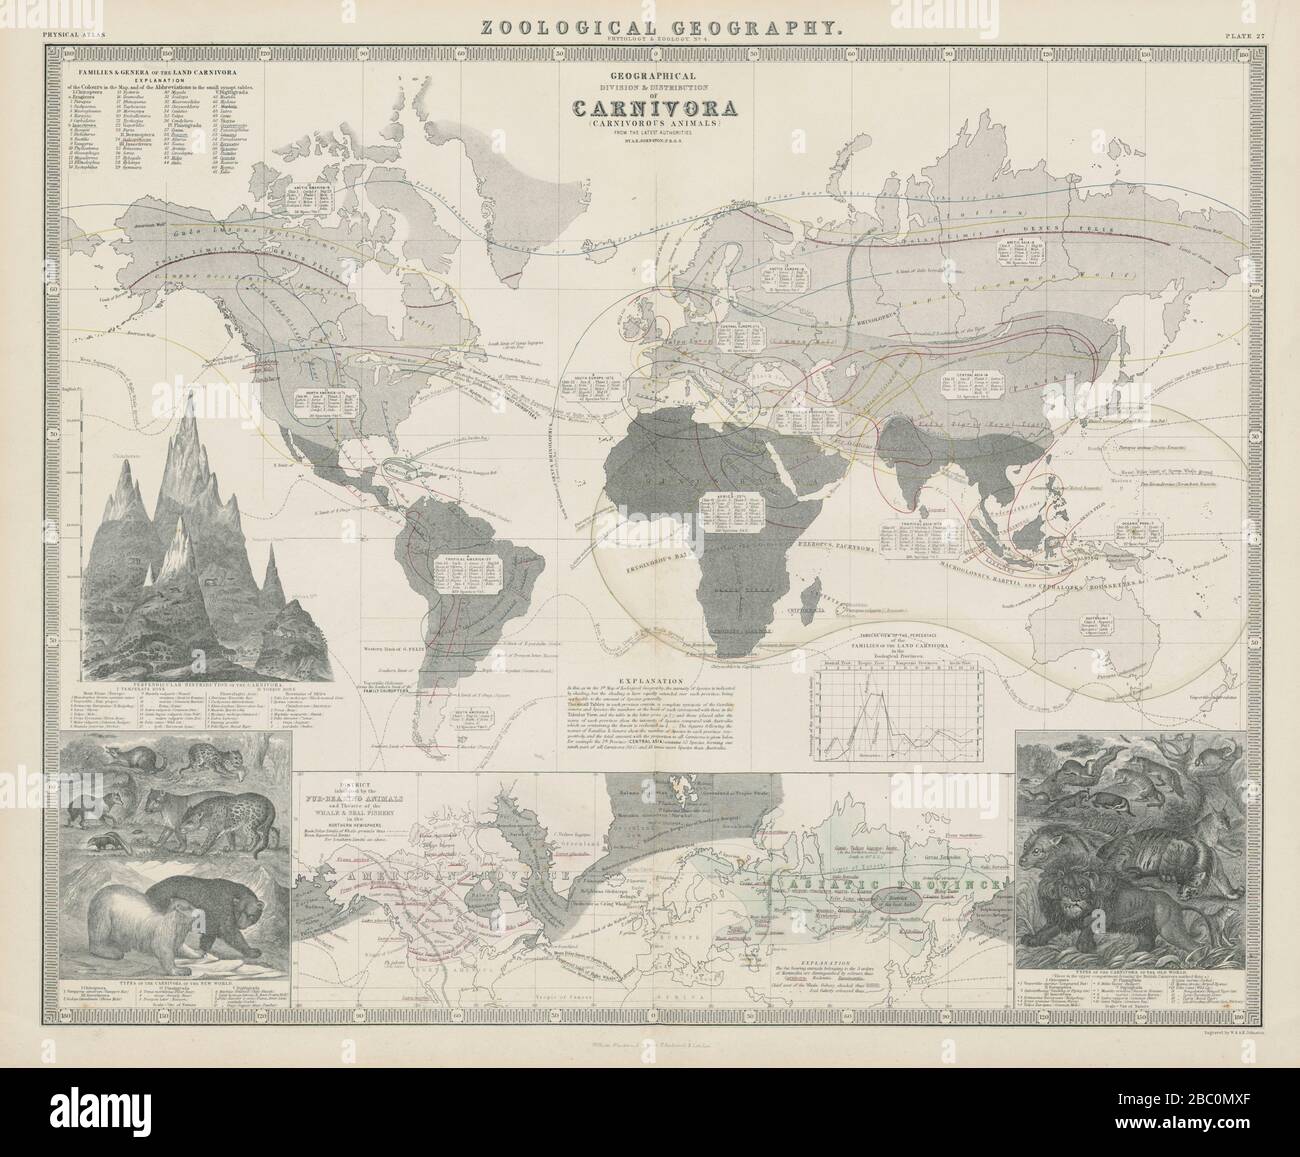 Geografia zoologica. Carnivora (animali carnivori) distribuzione 1856 mappa Foto Stock